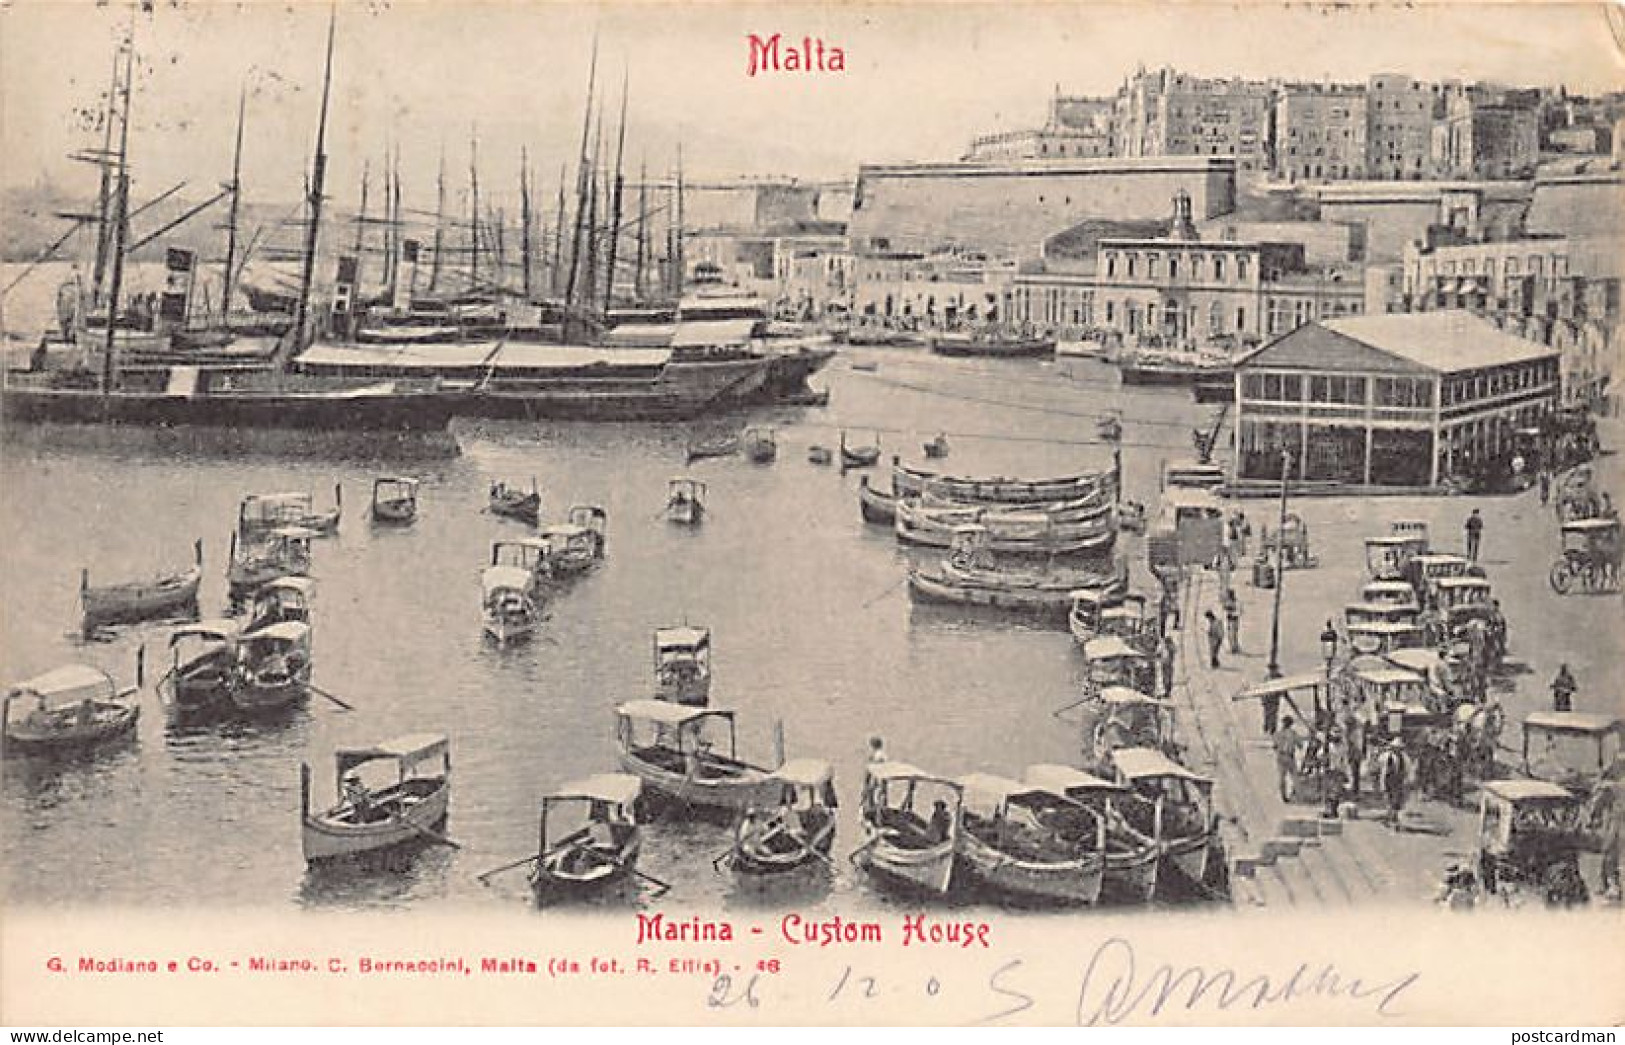 Malta - VALLETTA - Marina - Custom House - Publ. G. Modiano E Co. - C. Bornaccini 46 - Malte